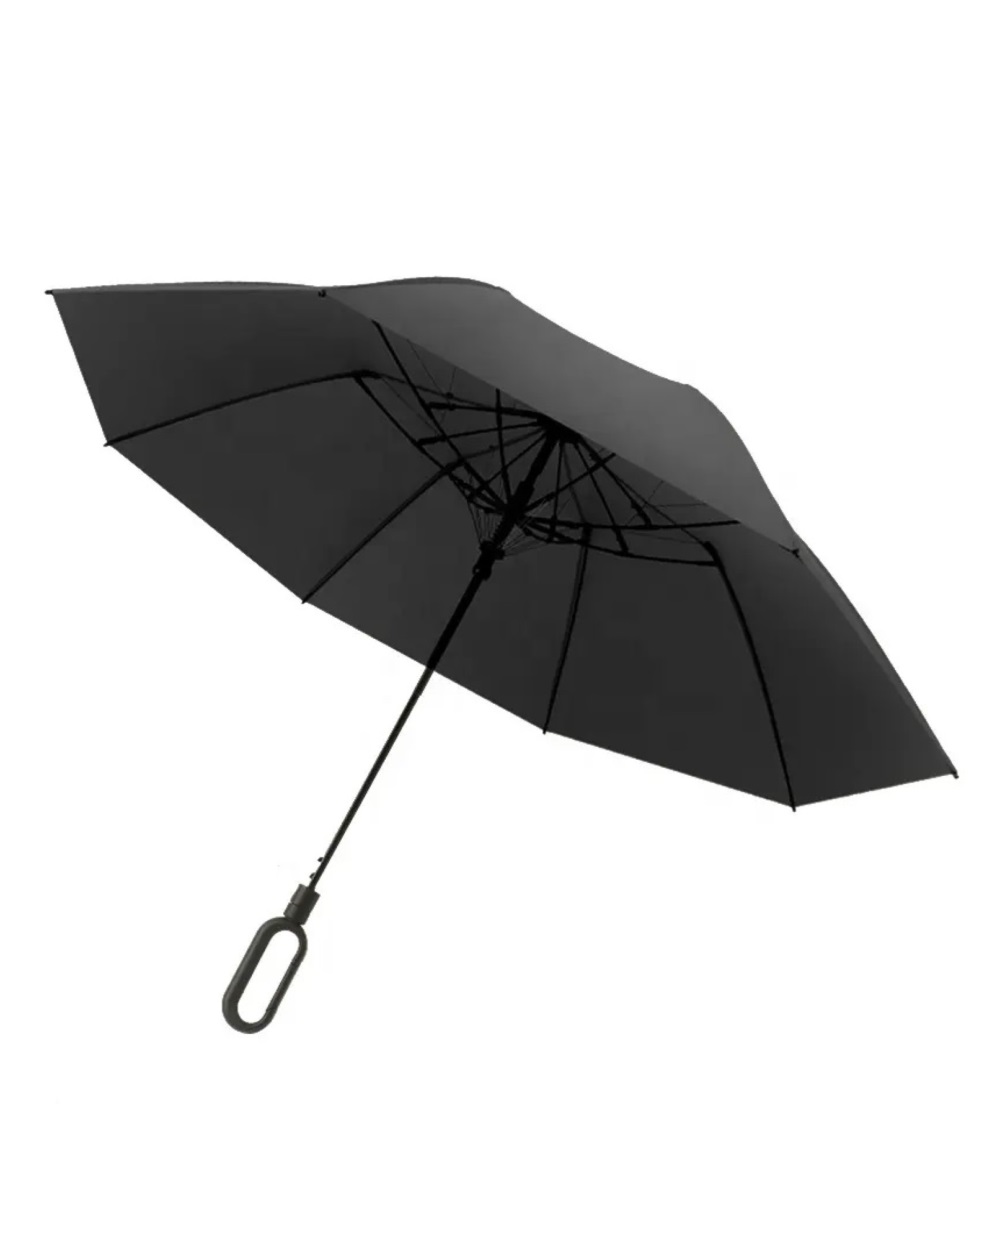 2foldumbrella cliphandle black front 1